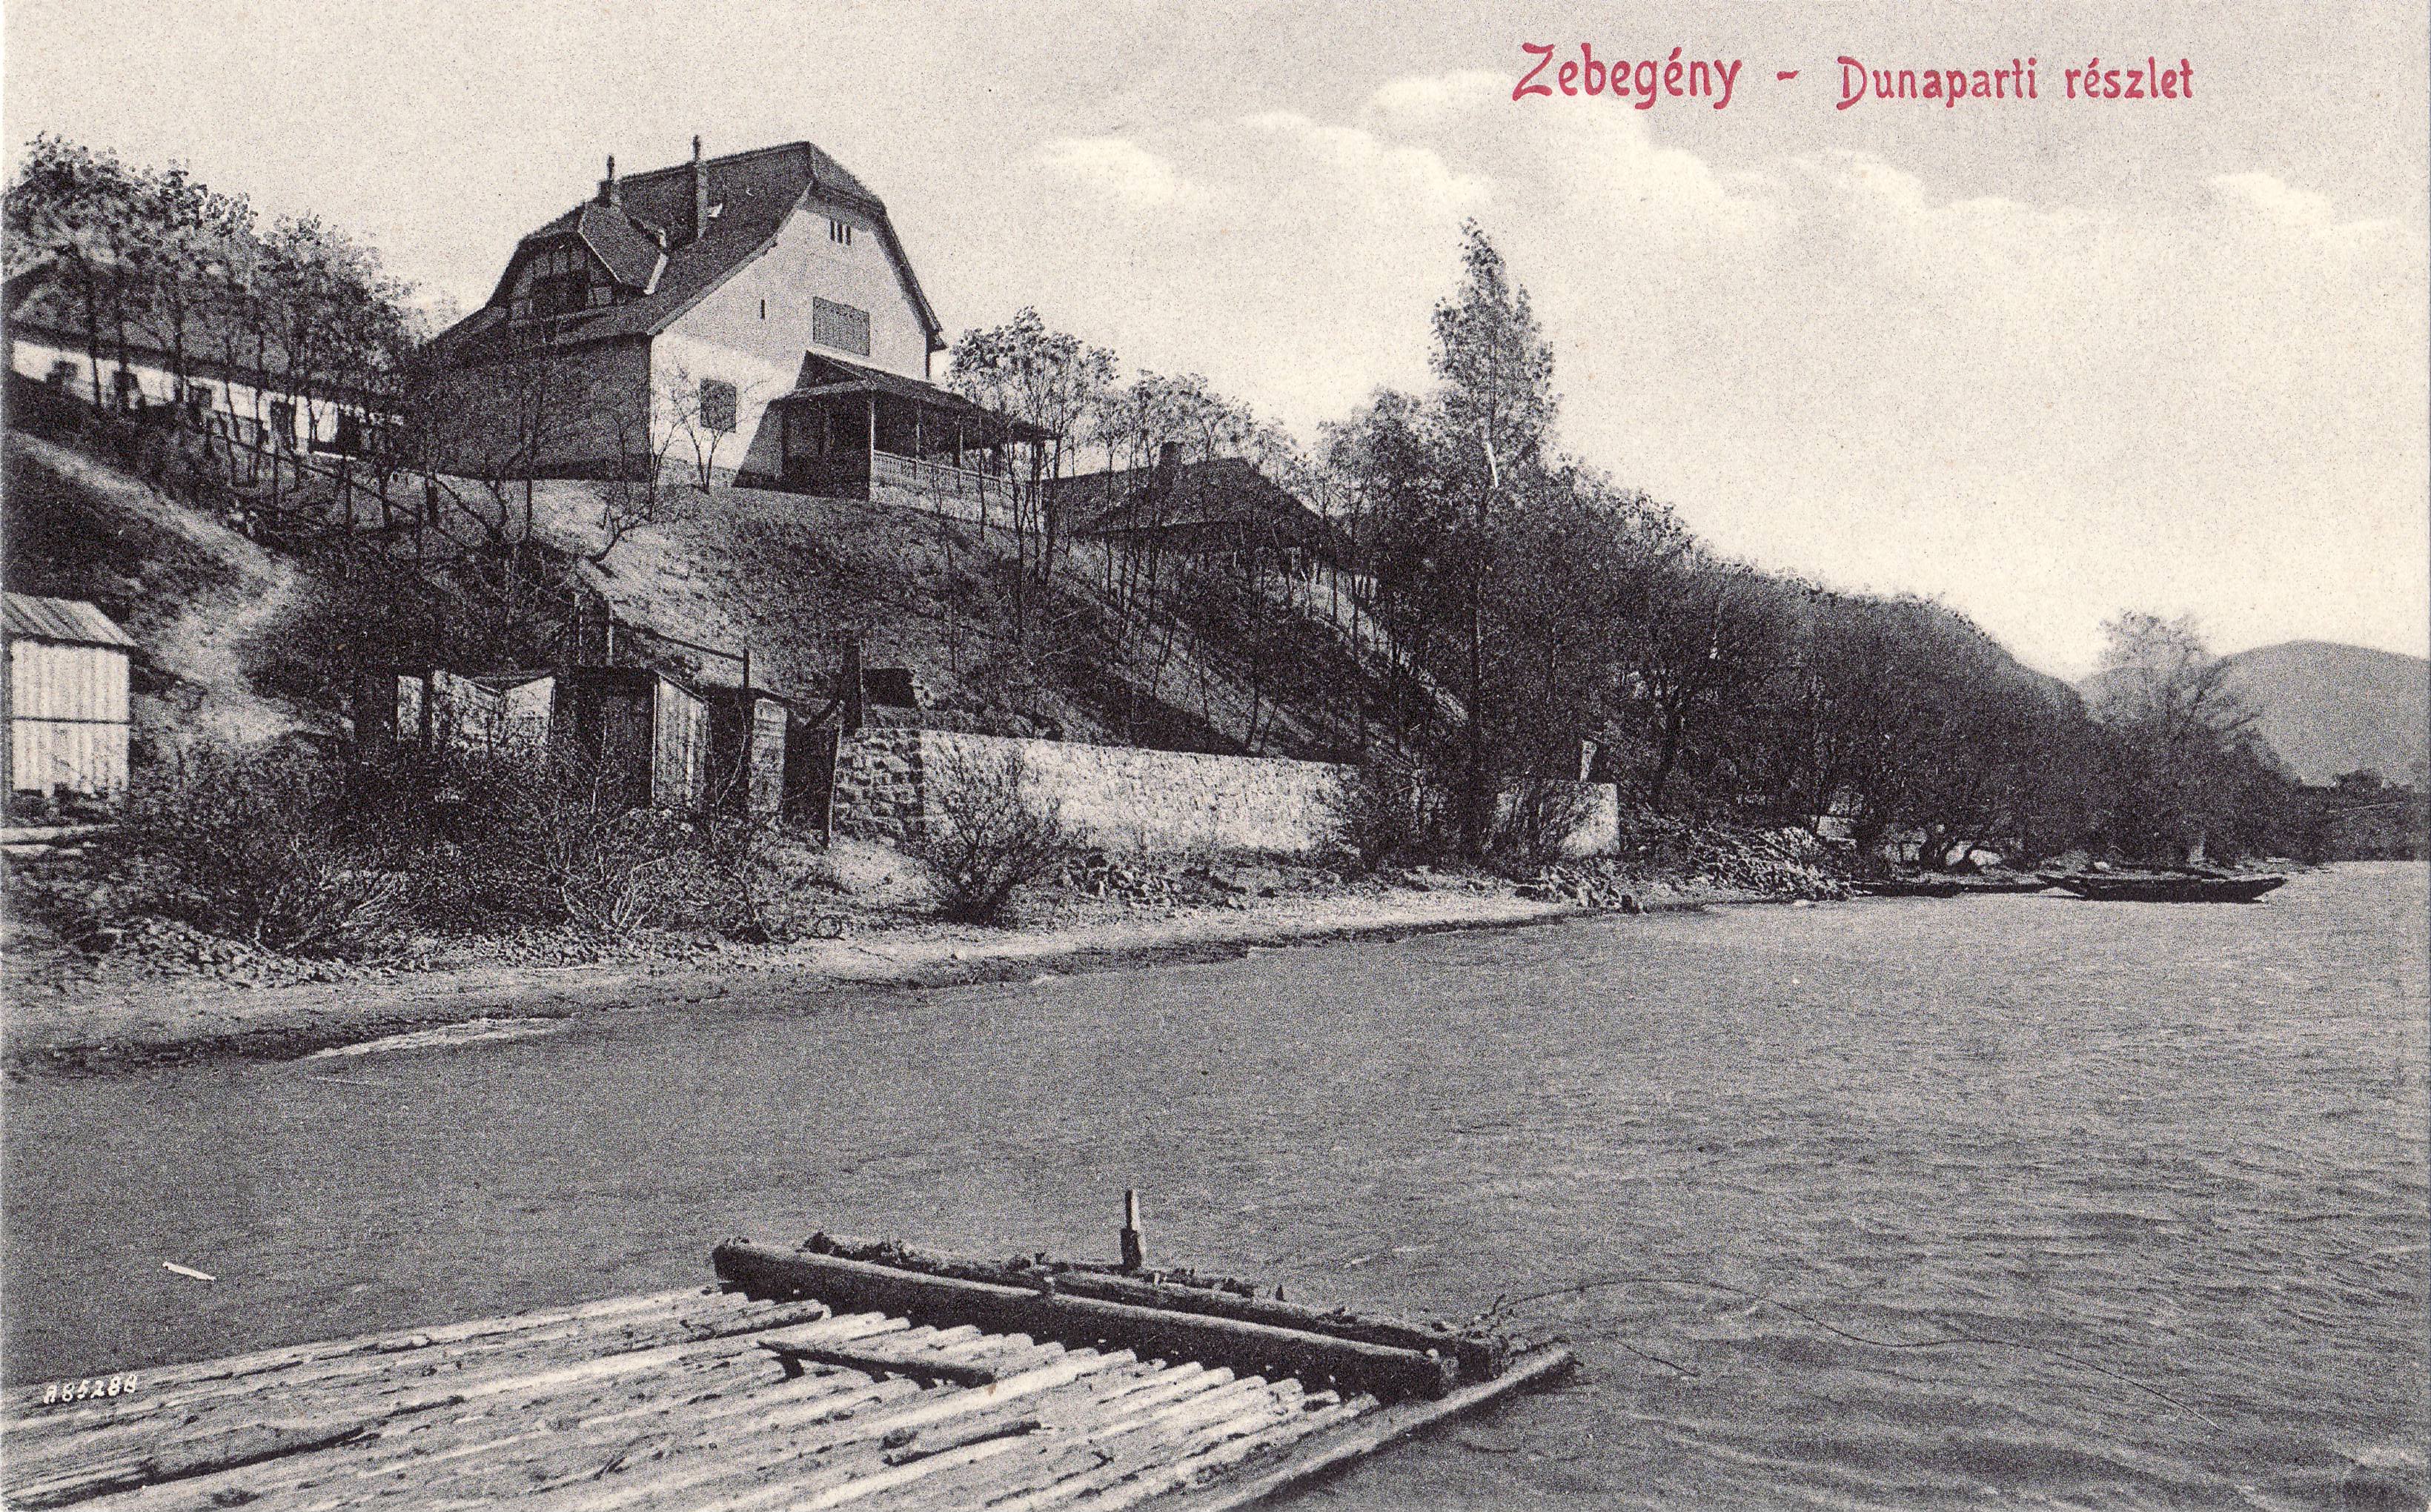 Zebegény – Dunaparti részlet (Magyar Környezetvédelmi és Vízügyi Múzeum - Duna Múzeum CC BY-NC-SA)